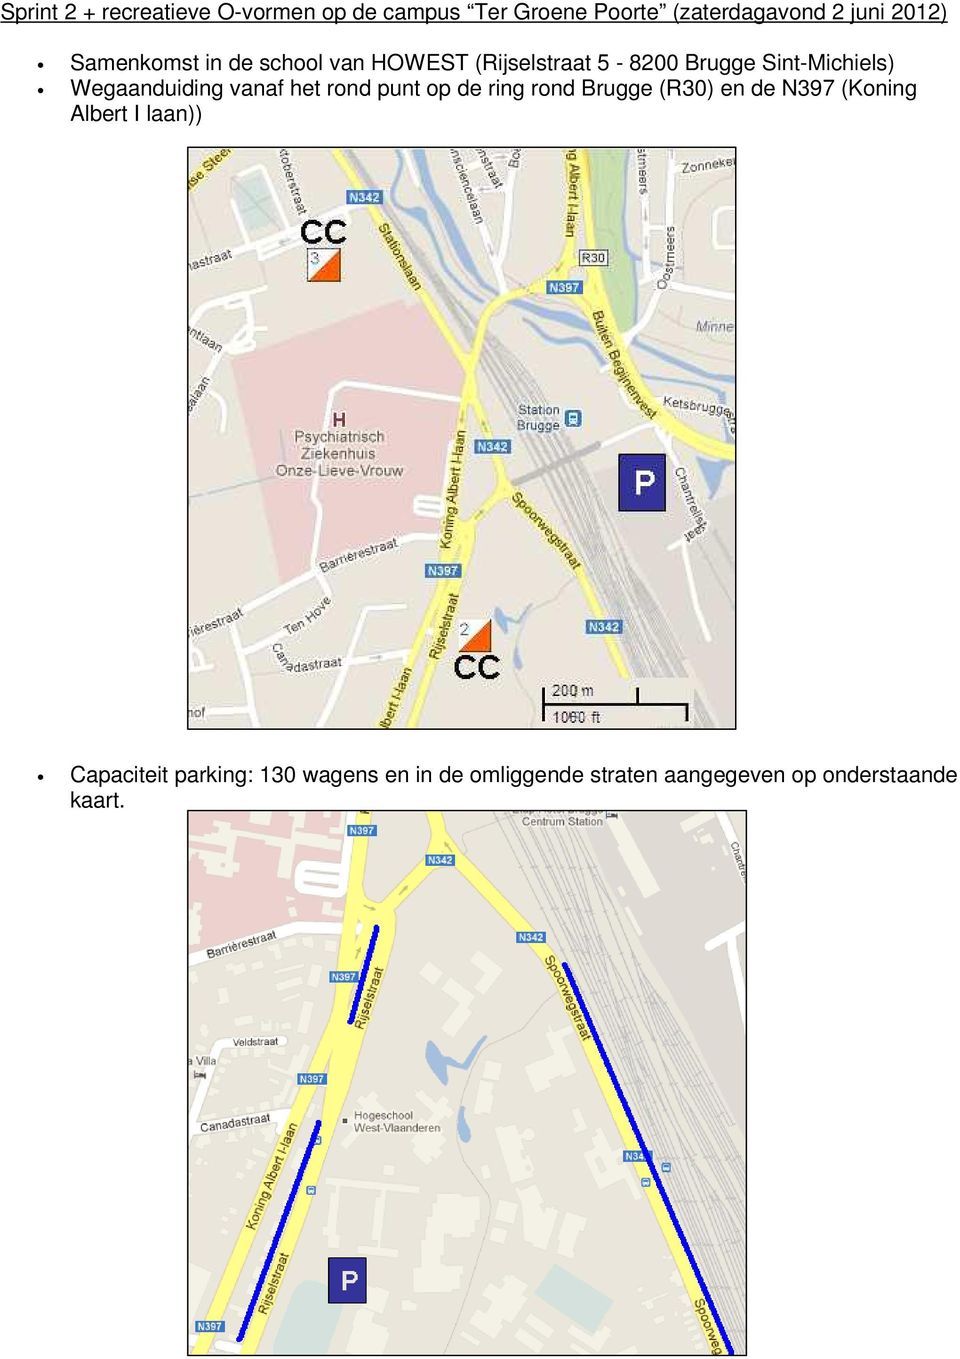 Wegaanduiding vanaf het rond punt op de ring rond Brugge (R30) en de N397 (Koning Albert